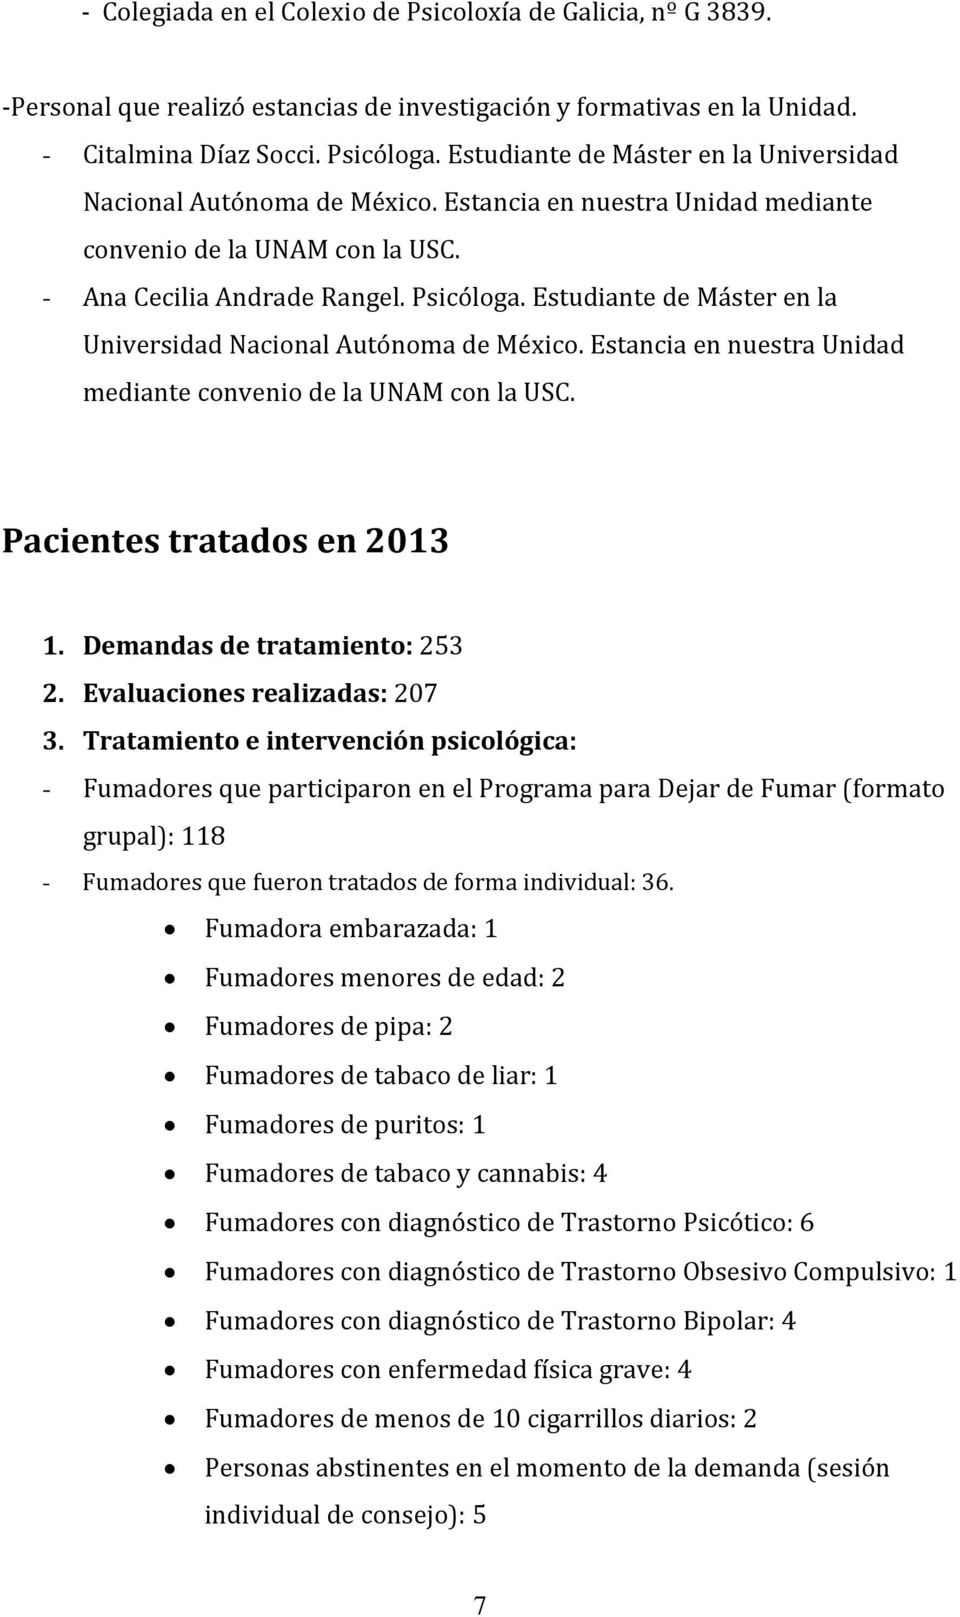 Estudiante de Máster en la Universidad Nacional Autónoma de México. Estancia en nuestra Unidad mediante convenio de la UNAM con la USC. Pacientes tratados en 2013 1. Demandas de tratamiento: 253 2.